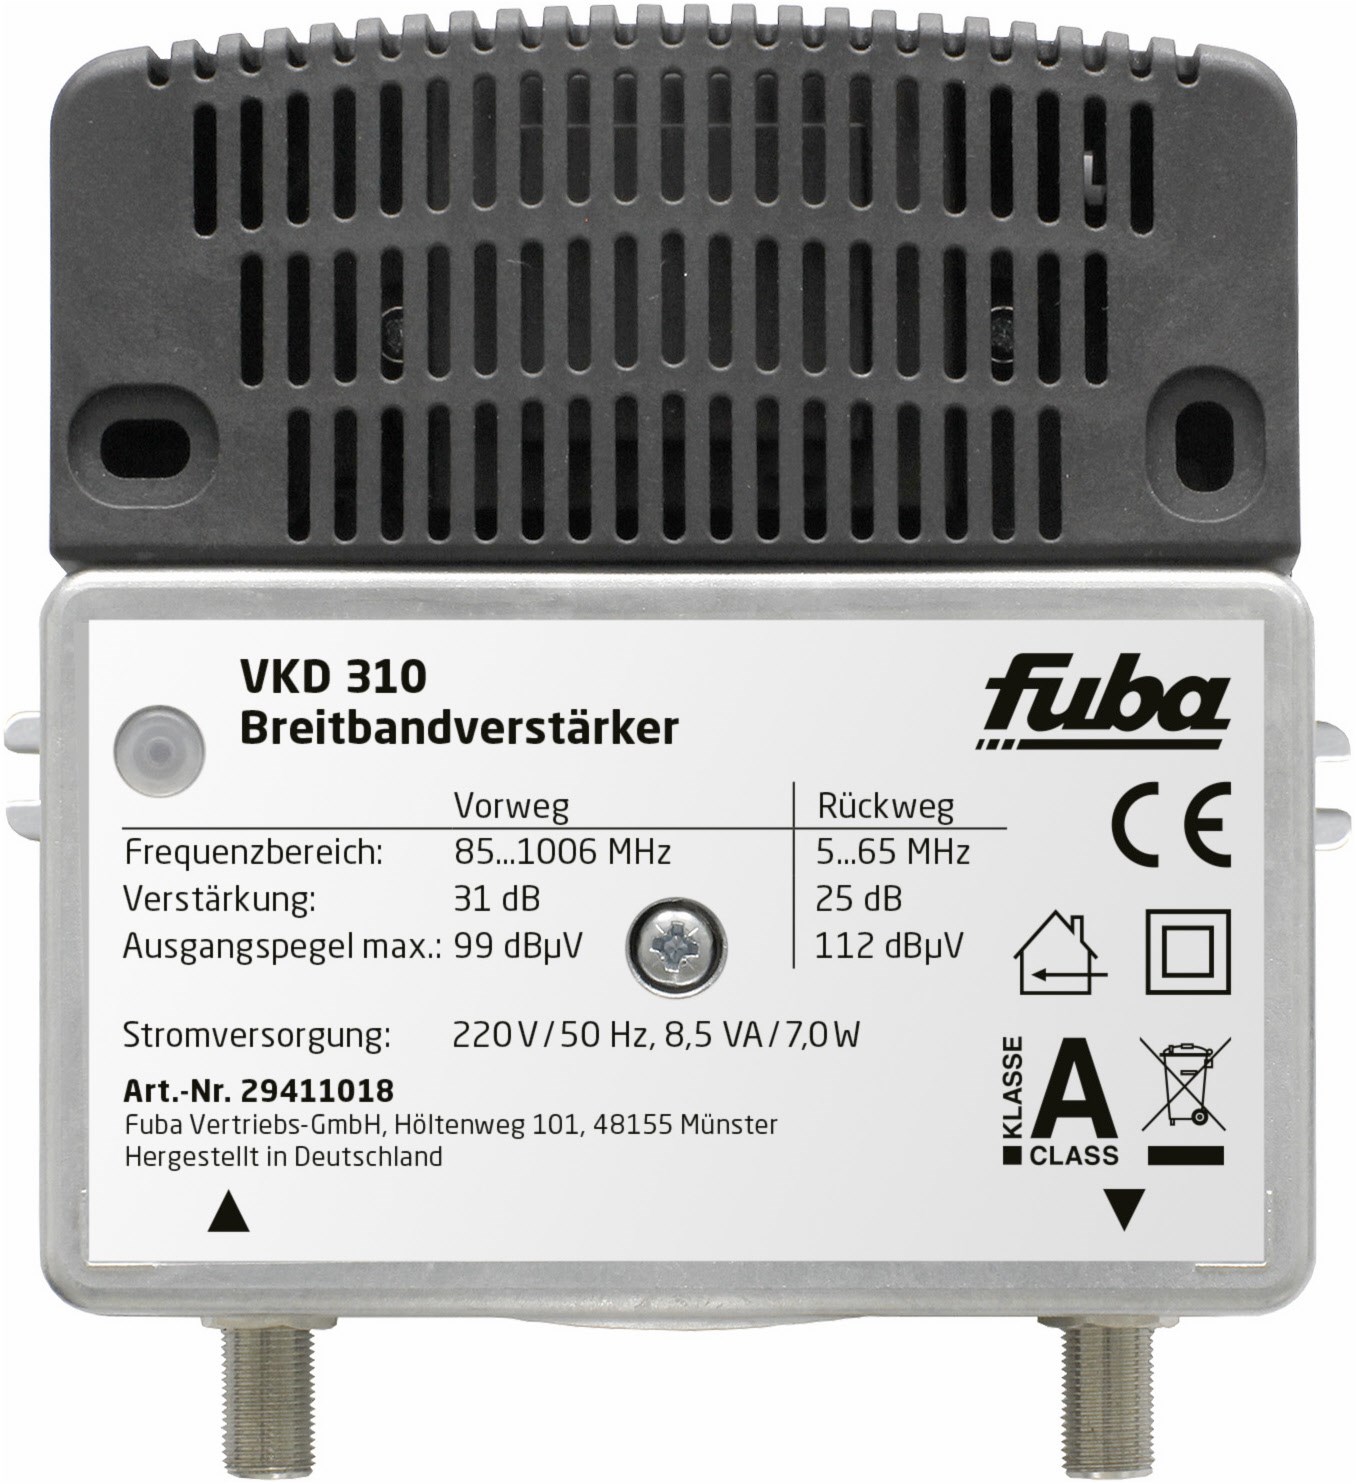 VKD 310 Breitbandverstärker